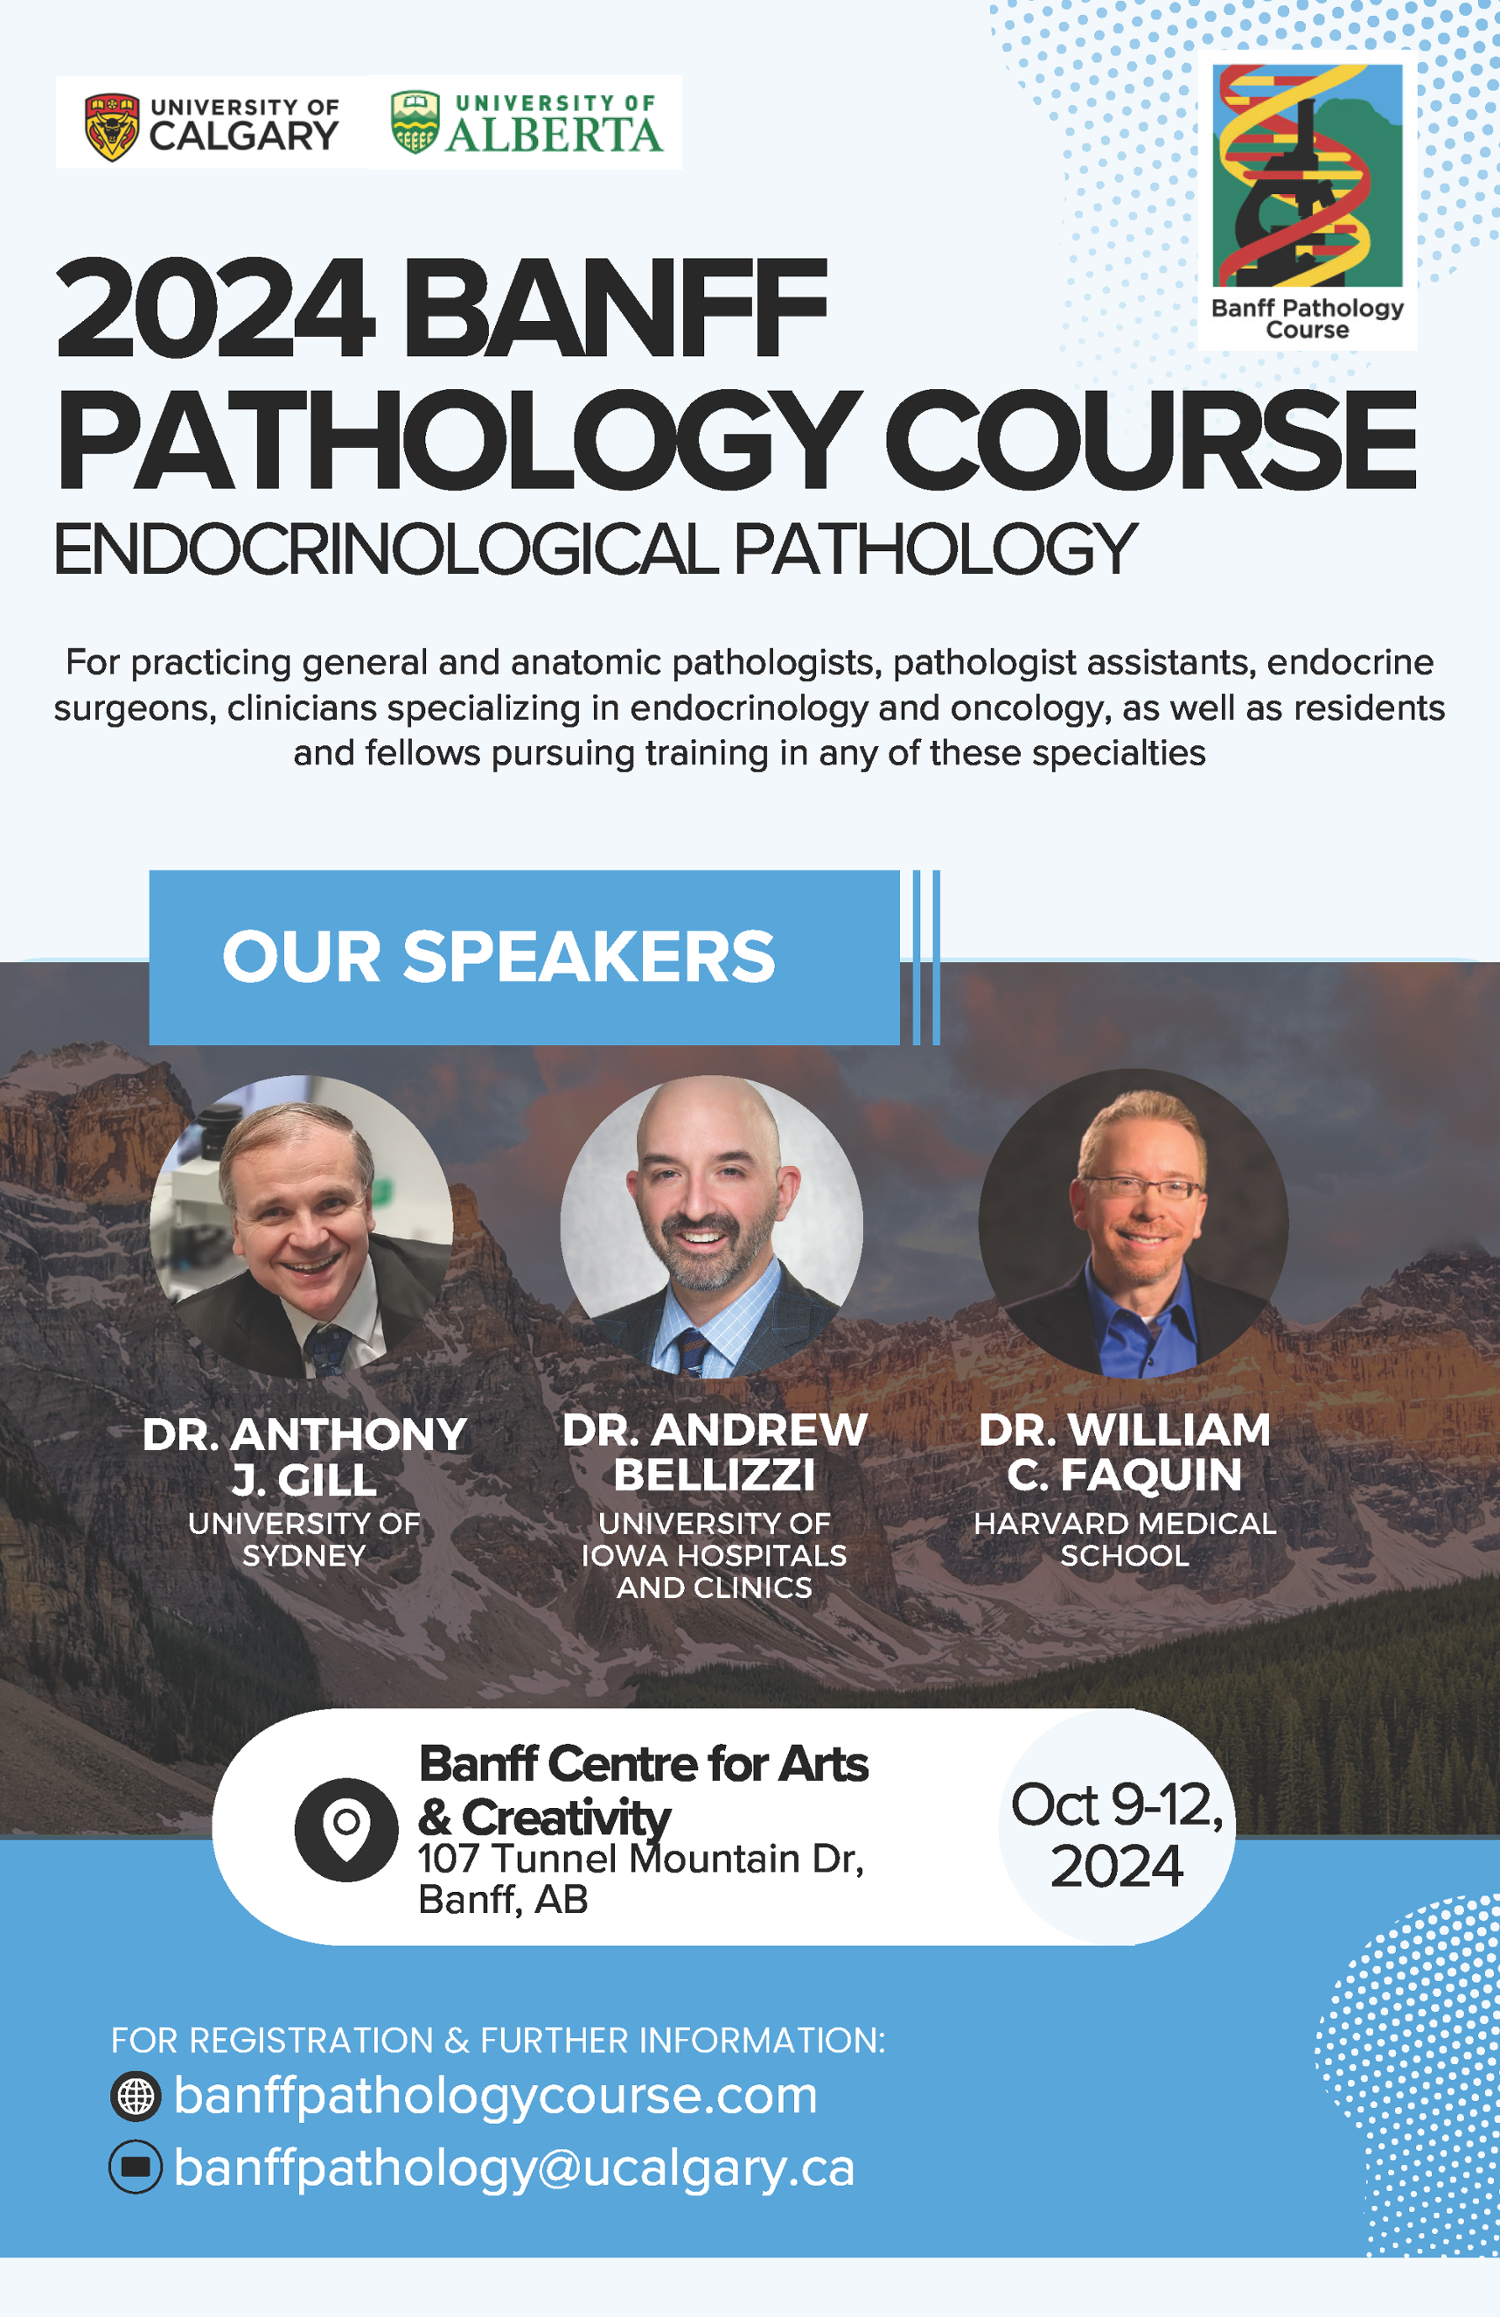 Banff Pathology Course 2024